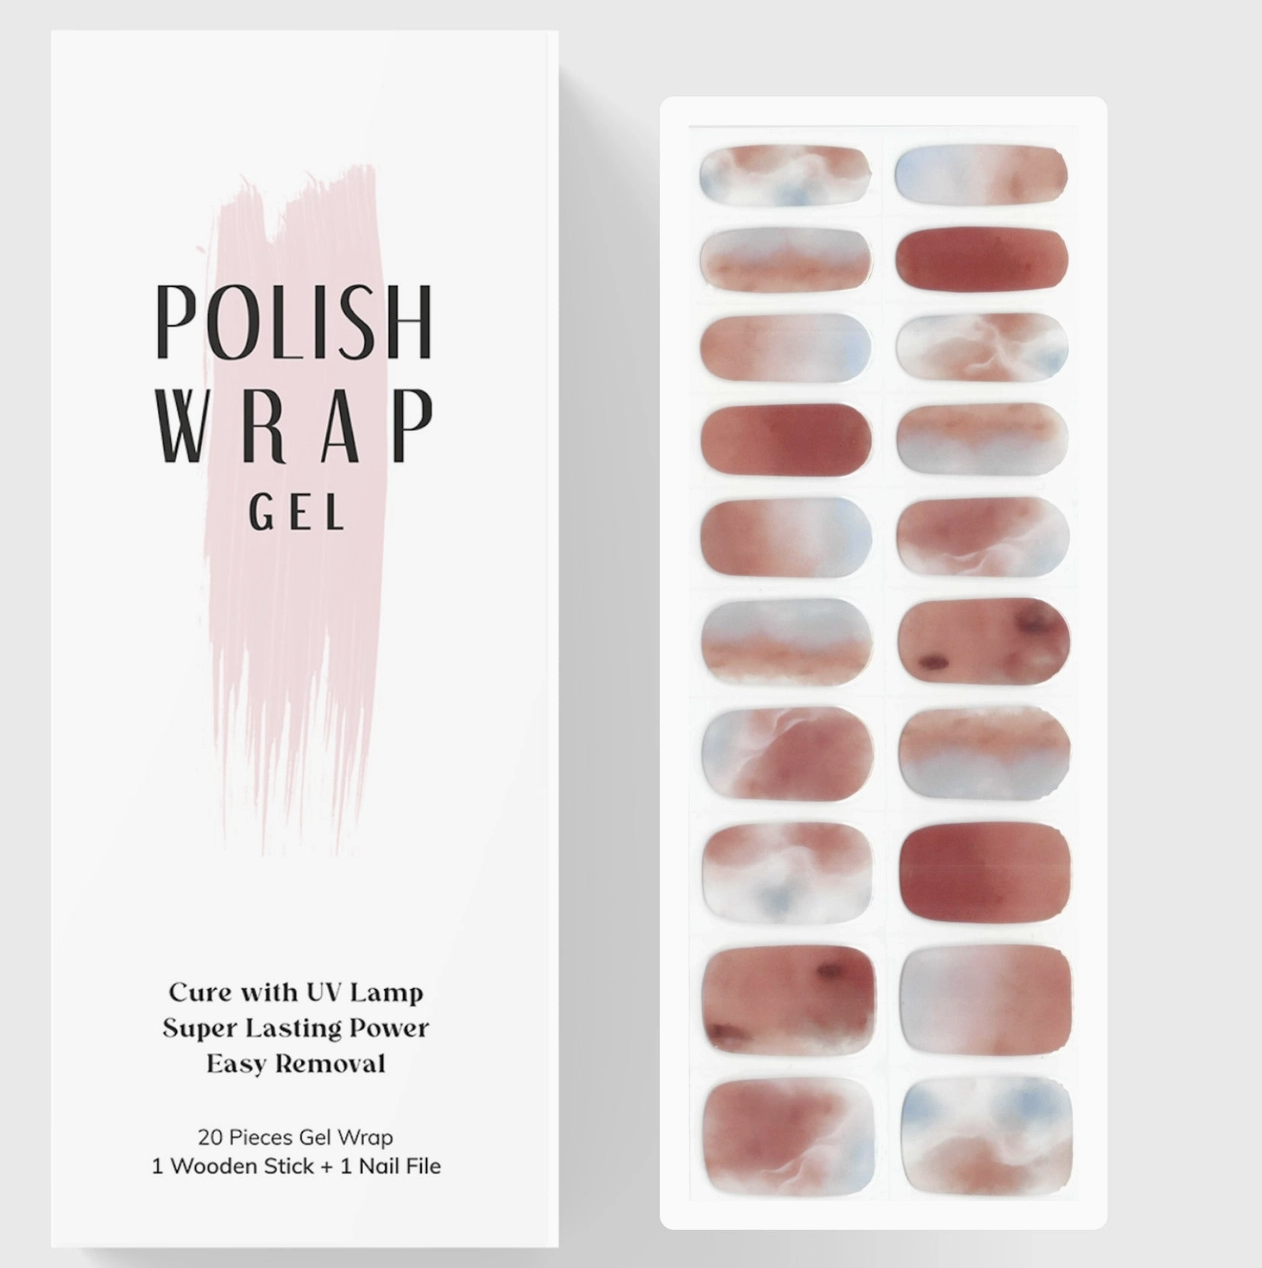 Polish Wrap - GEL